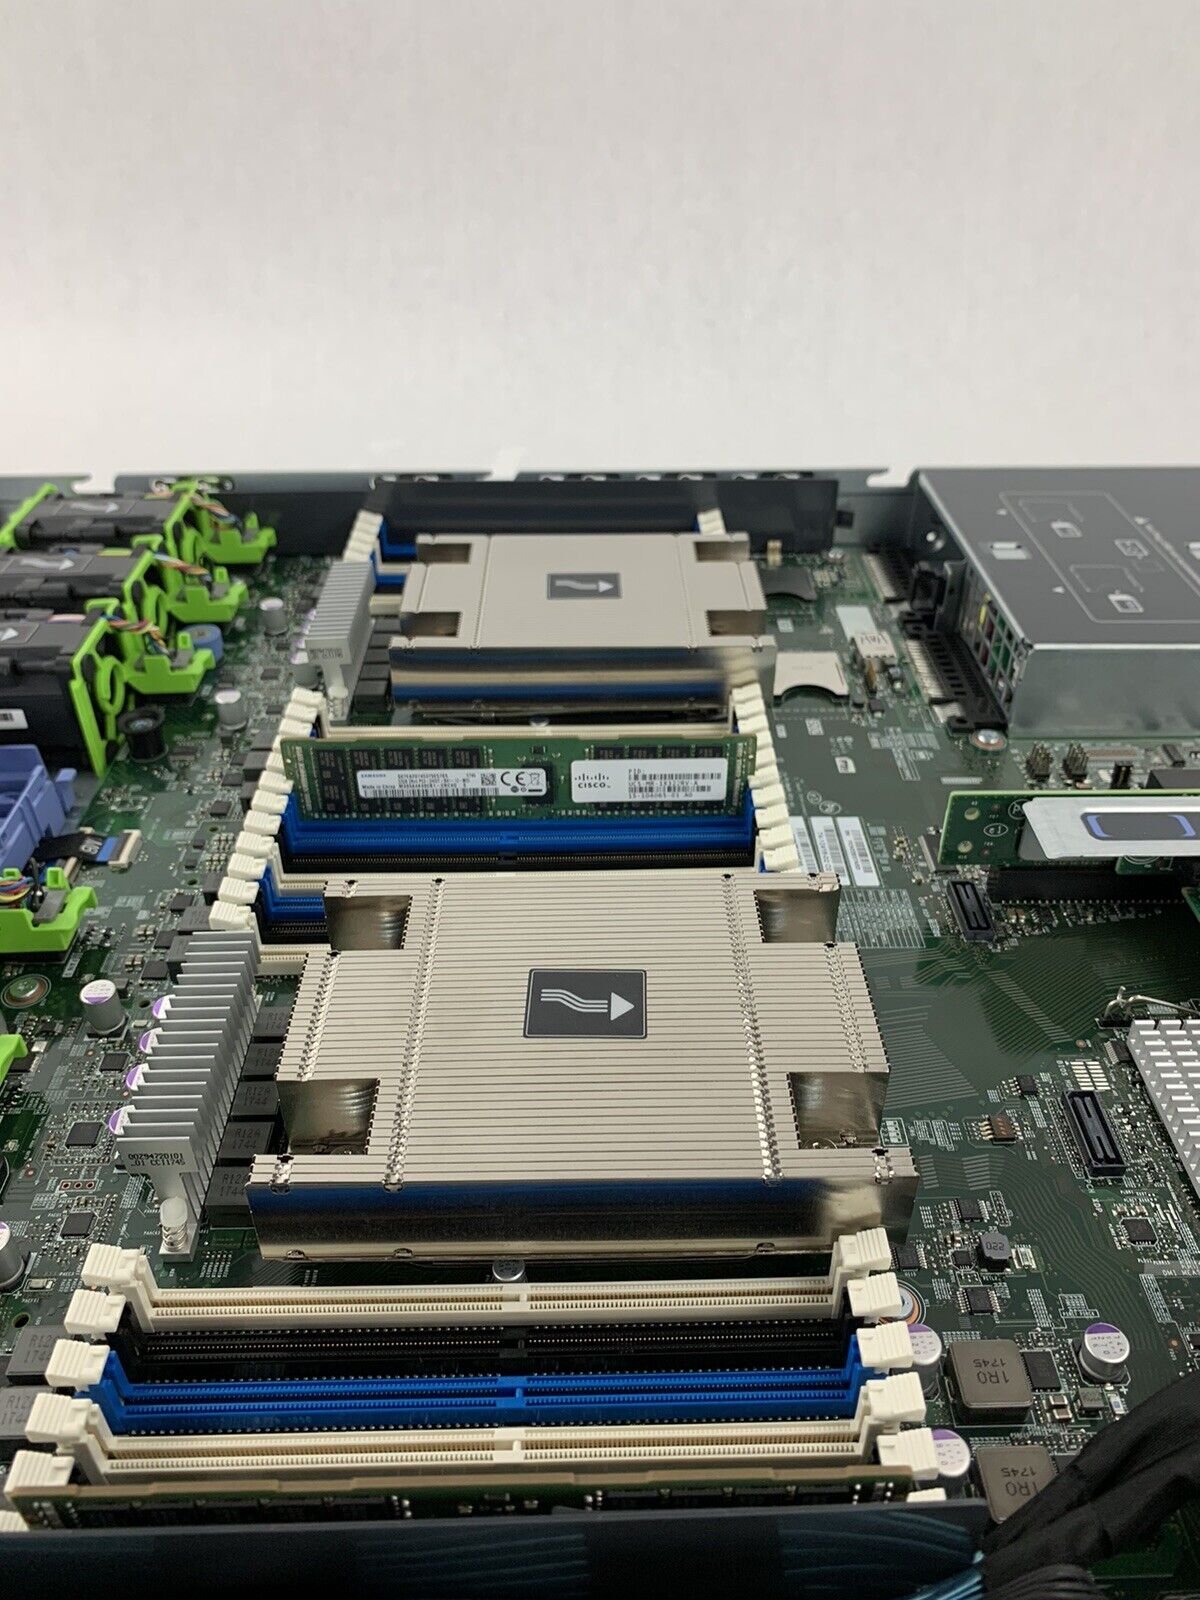 Cisco APIC-M2 Server UCS-C220-M4S Xeon E5-2609v3 1.9 GHz 64 GB Ram No OS No HDD